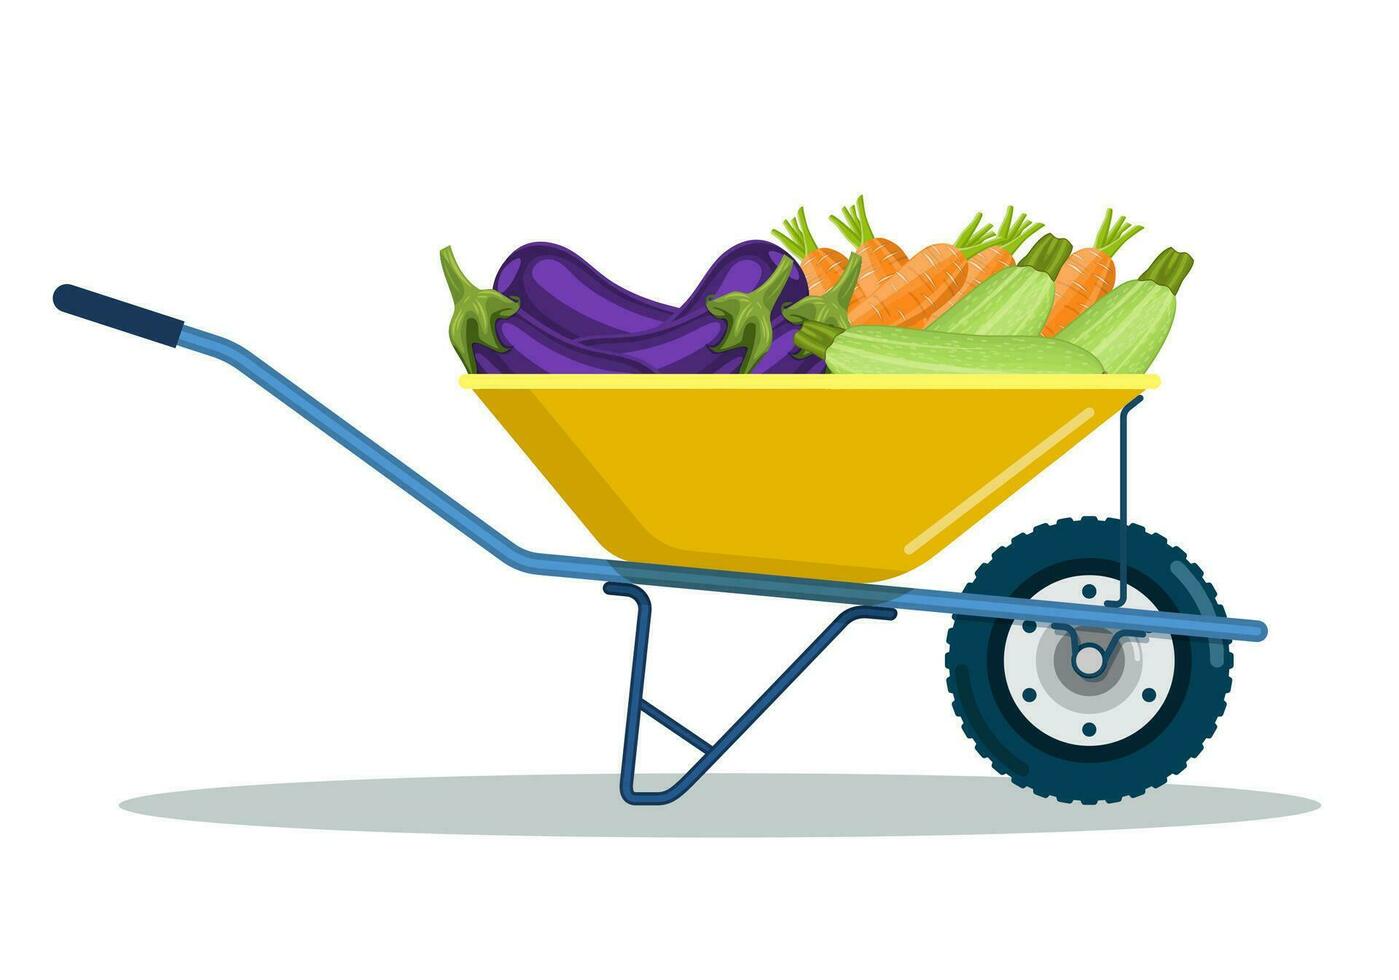 Garten Wagen mit Zucchini, Aubergine, Karotte. natürlich und lecker Lebensmittel. organisch Bauernhof Produkte. Metall Schubkarre voll von reif Gemüse. Vektor Illustration im eben Stil